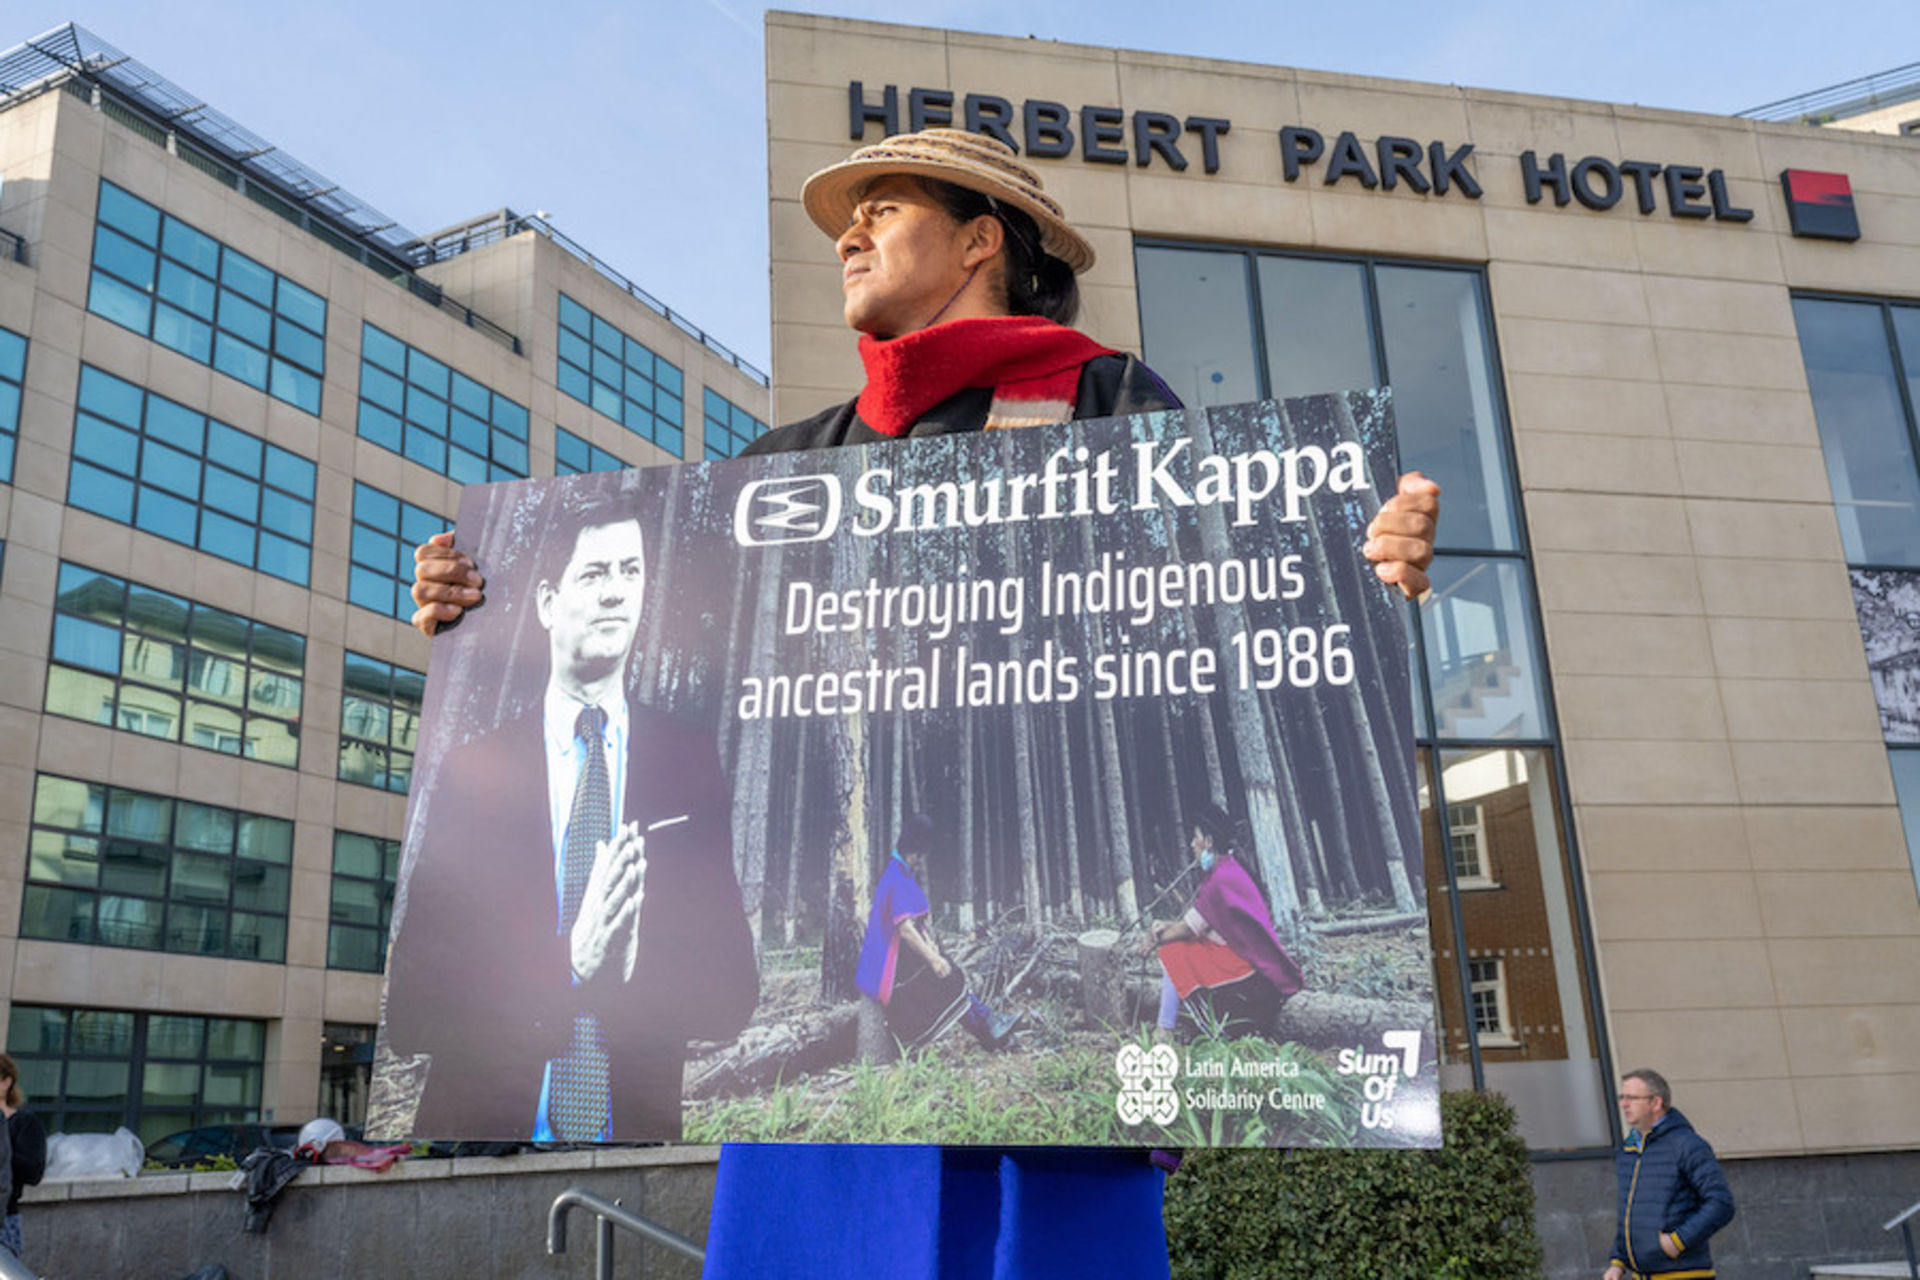 Pedro, chapeau sur la tête et écharpe rouge au cou, tient une affiche dénonçant la destruction causée par Smurfit Kappa devant le lieu dans lequel a eu lieu l'assemblée générale de l'entreprise à Dublin.